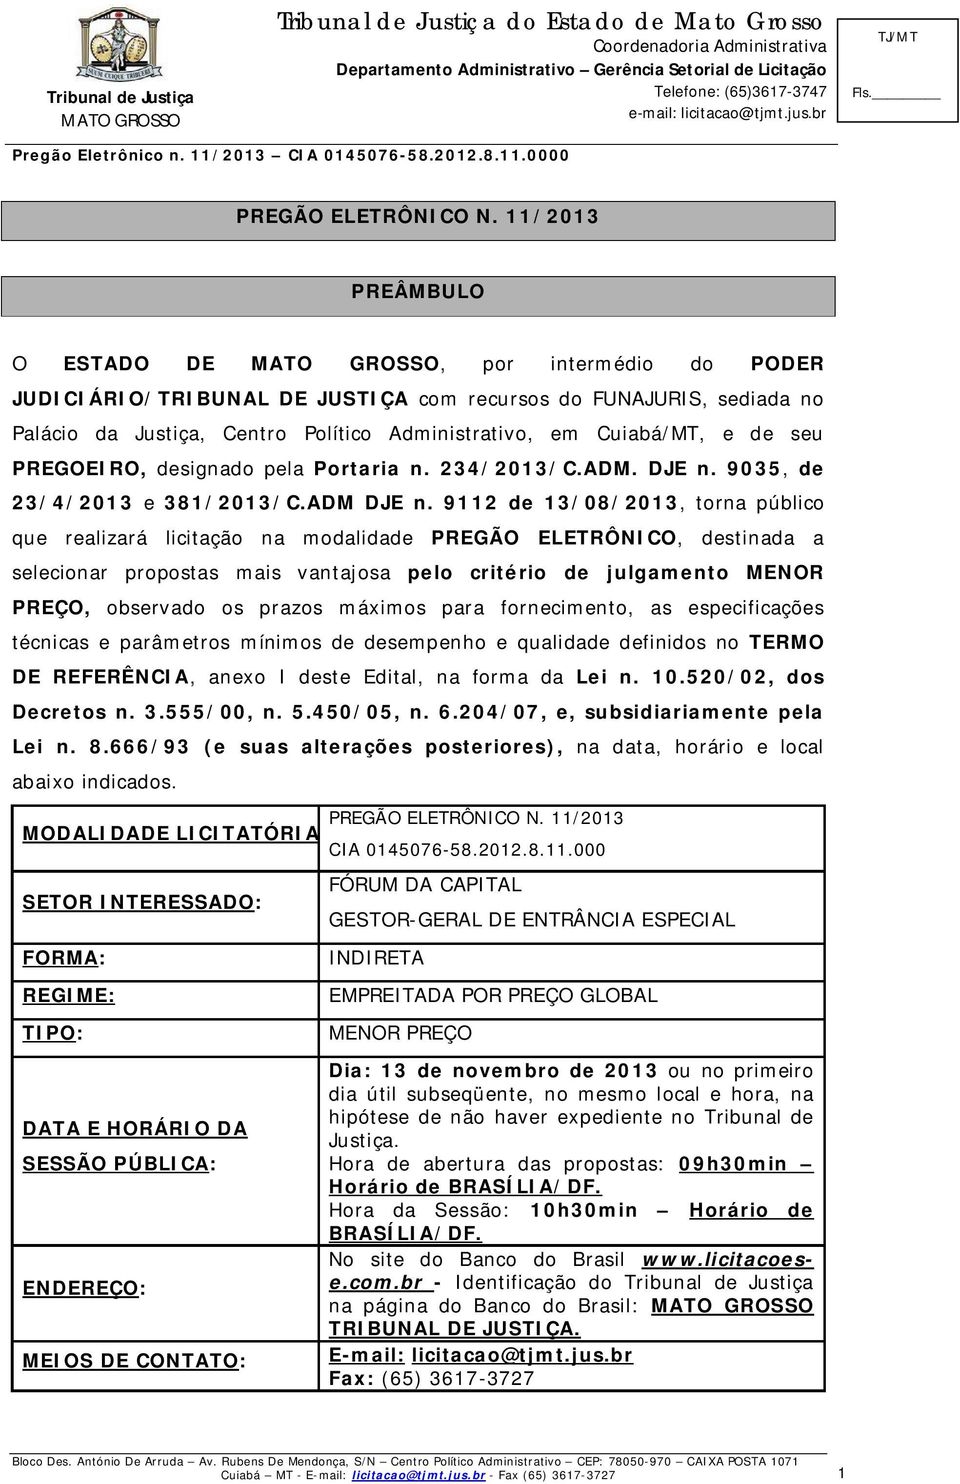 PREGOEIRO, designado pela Portaria n. 234/2013/C.ADM. DJE n. 9035, de 23/4/2013 e 381/2013/C.ADM DJE n.